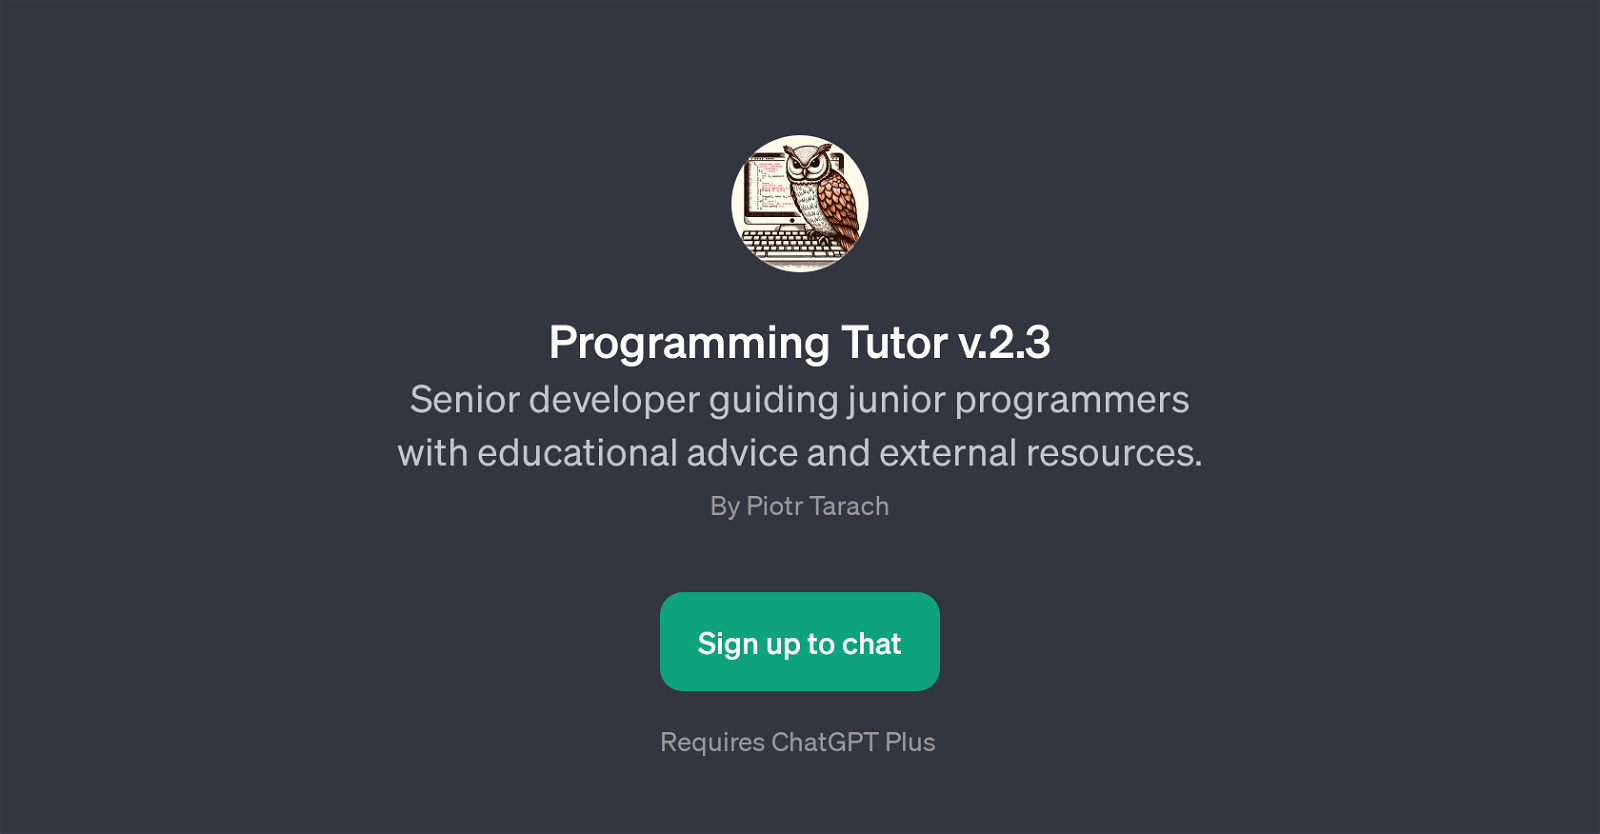 Programming Tutor v.2.3 website